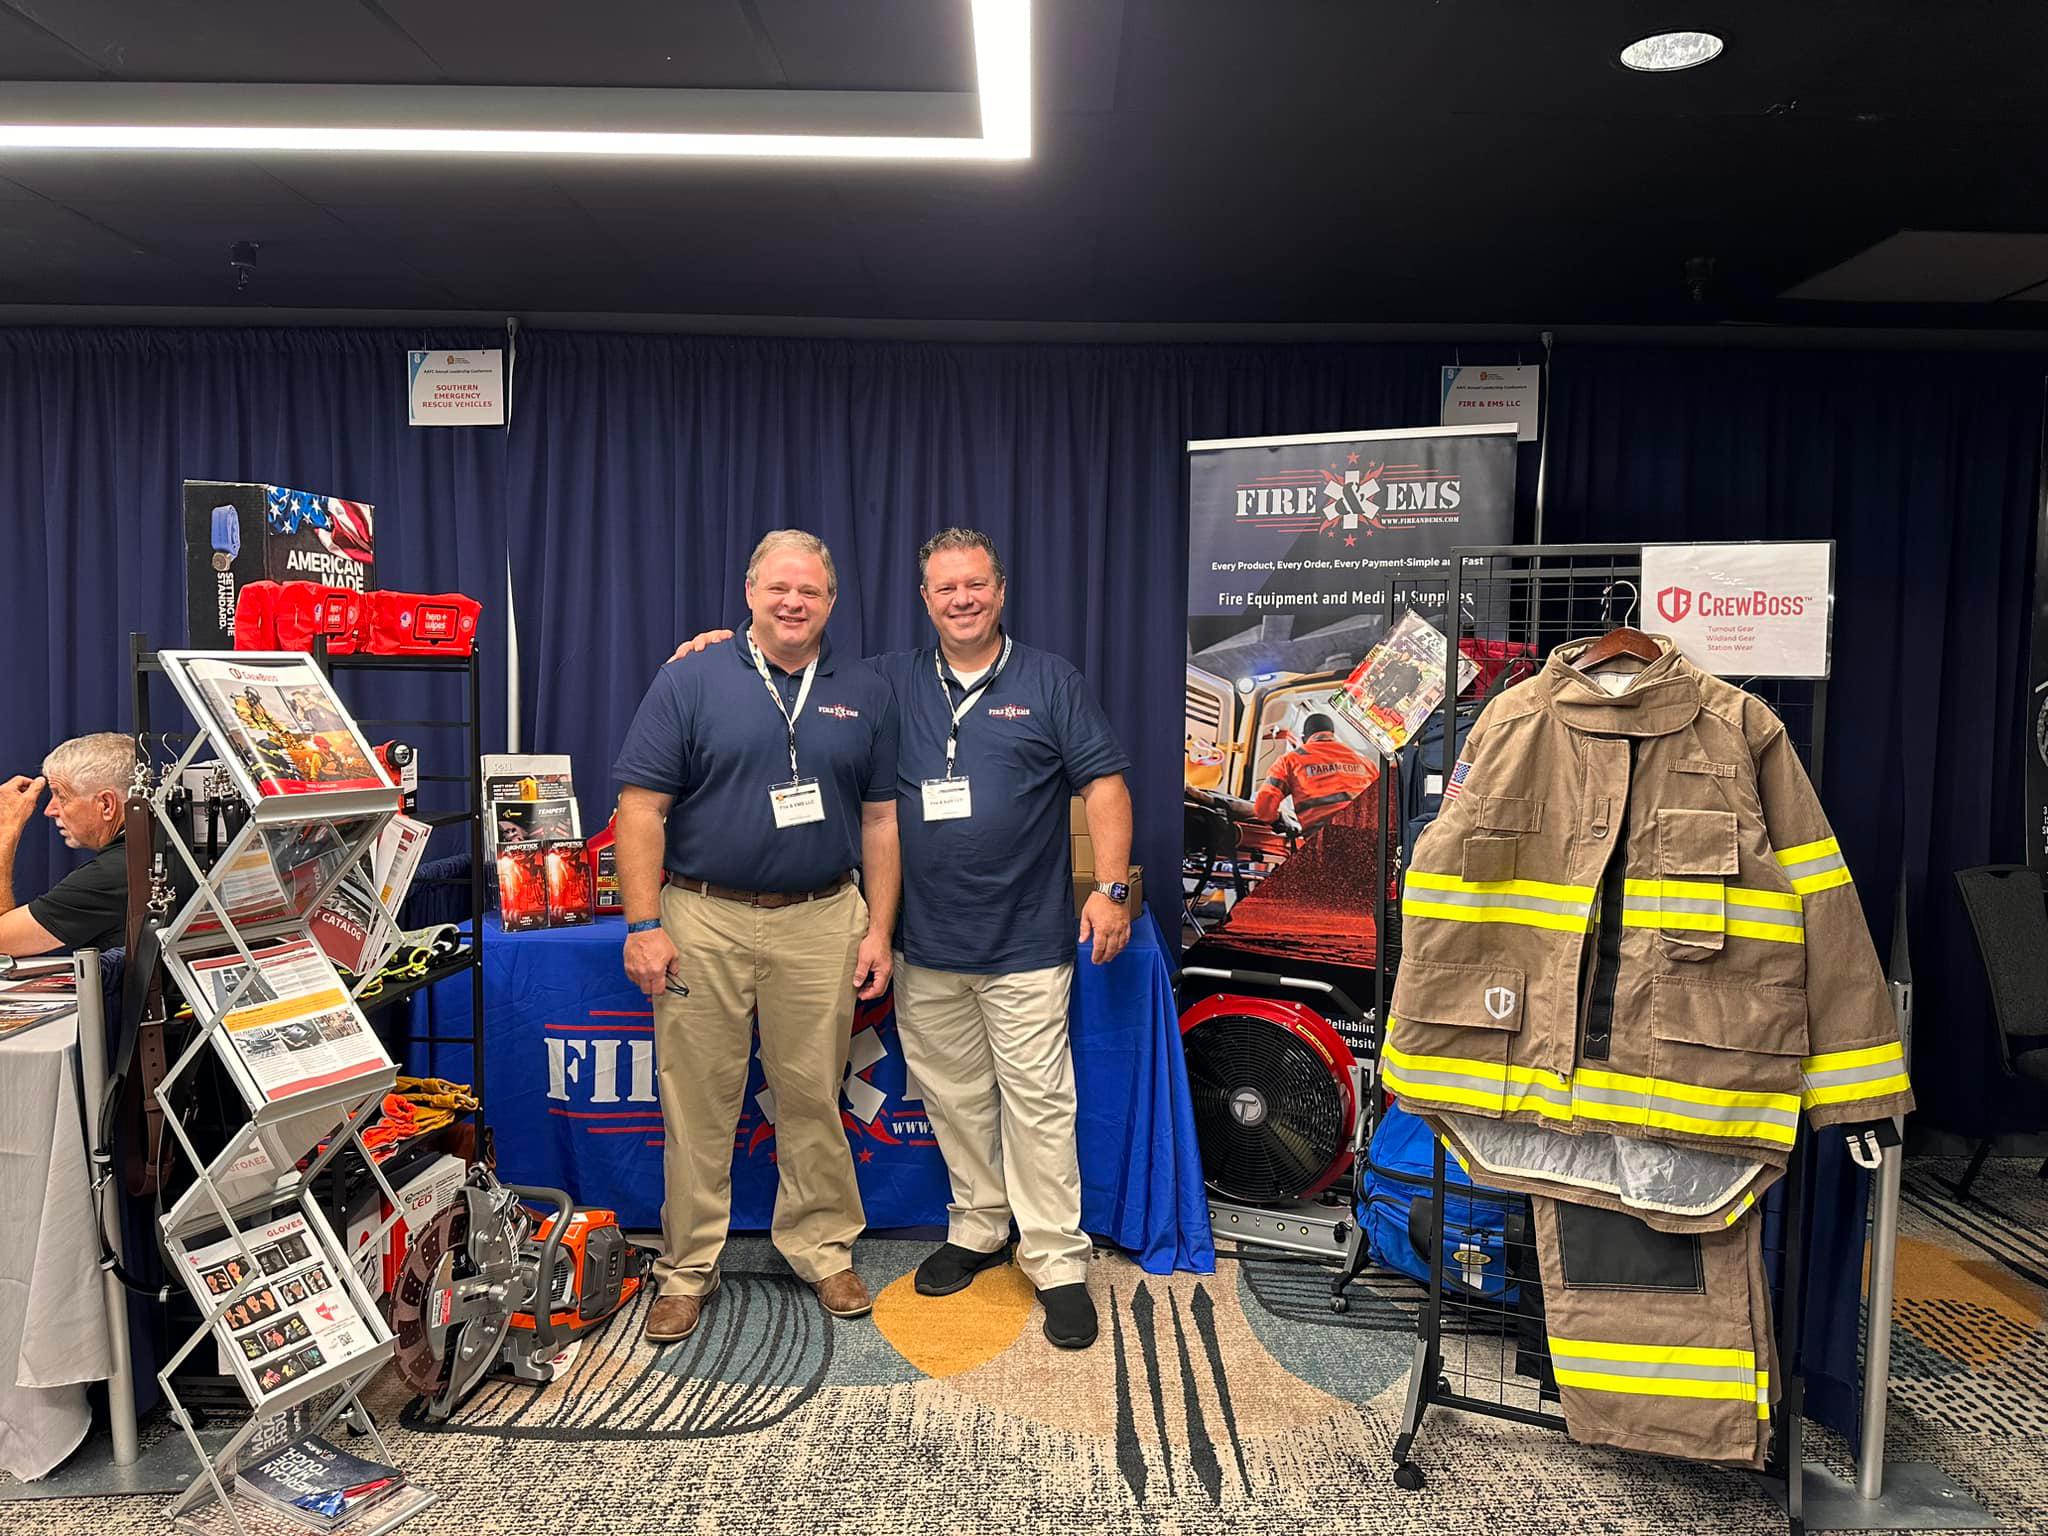 Fire & EMS, LLC at the Alabama Association of Fire Chiefs